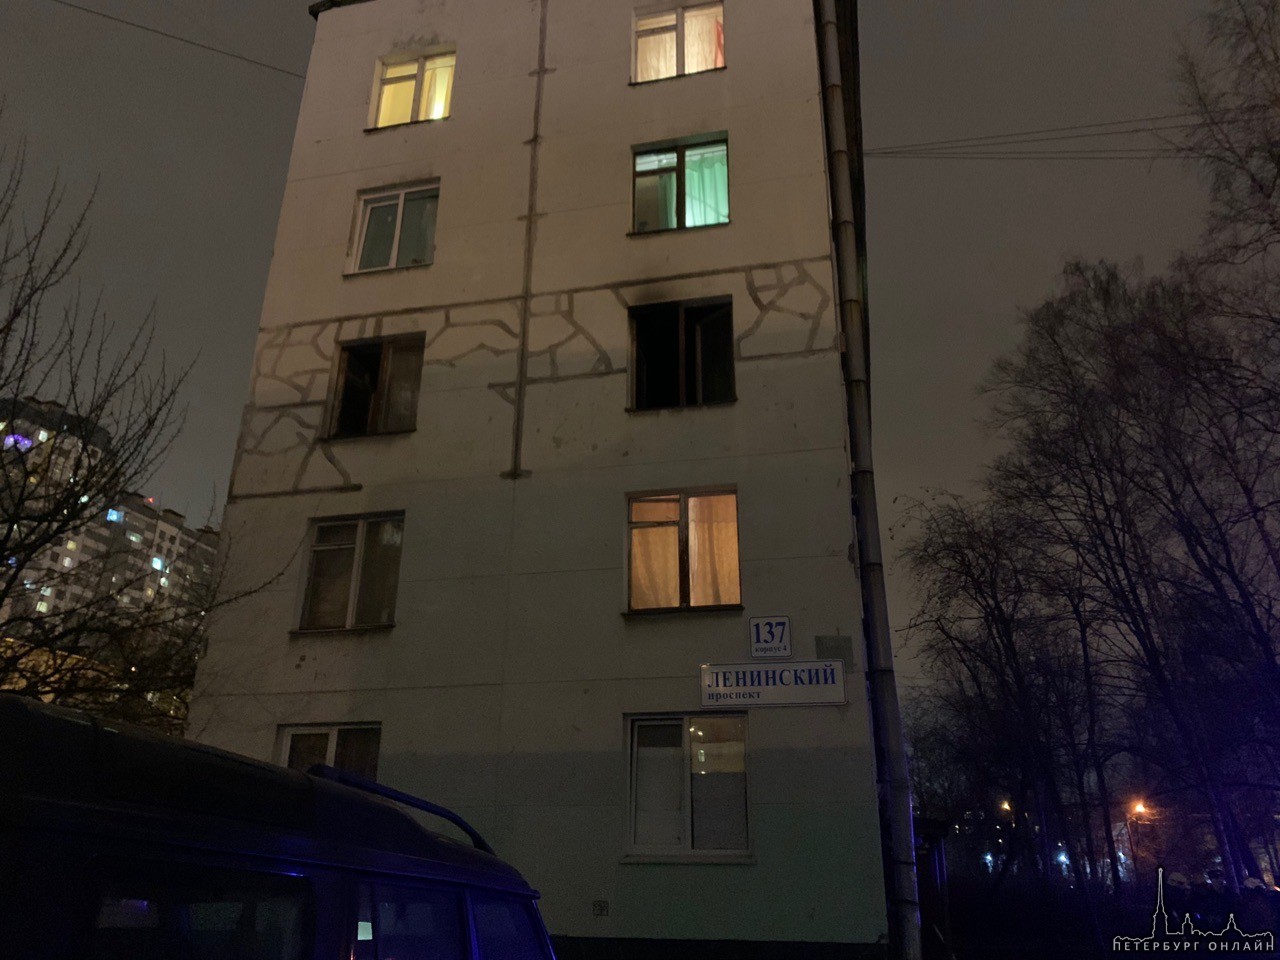 Сгорел 3 этаж дома 137 корпус 4 на Ленинском проспекте Службы на месте 1 трyп